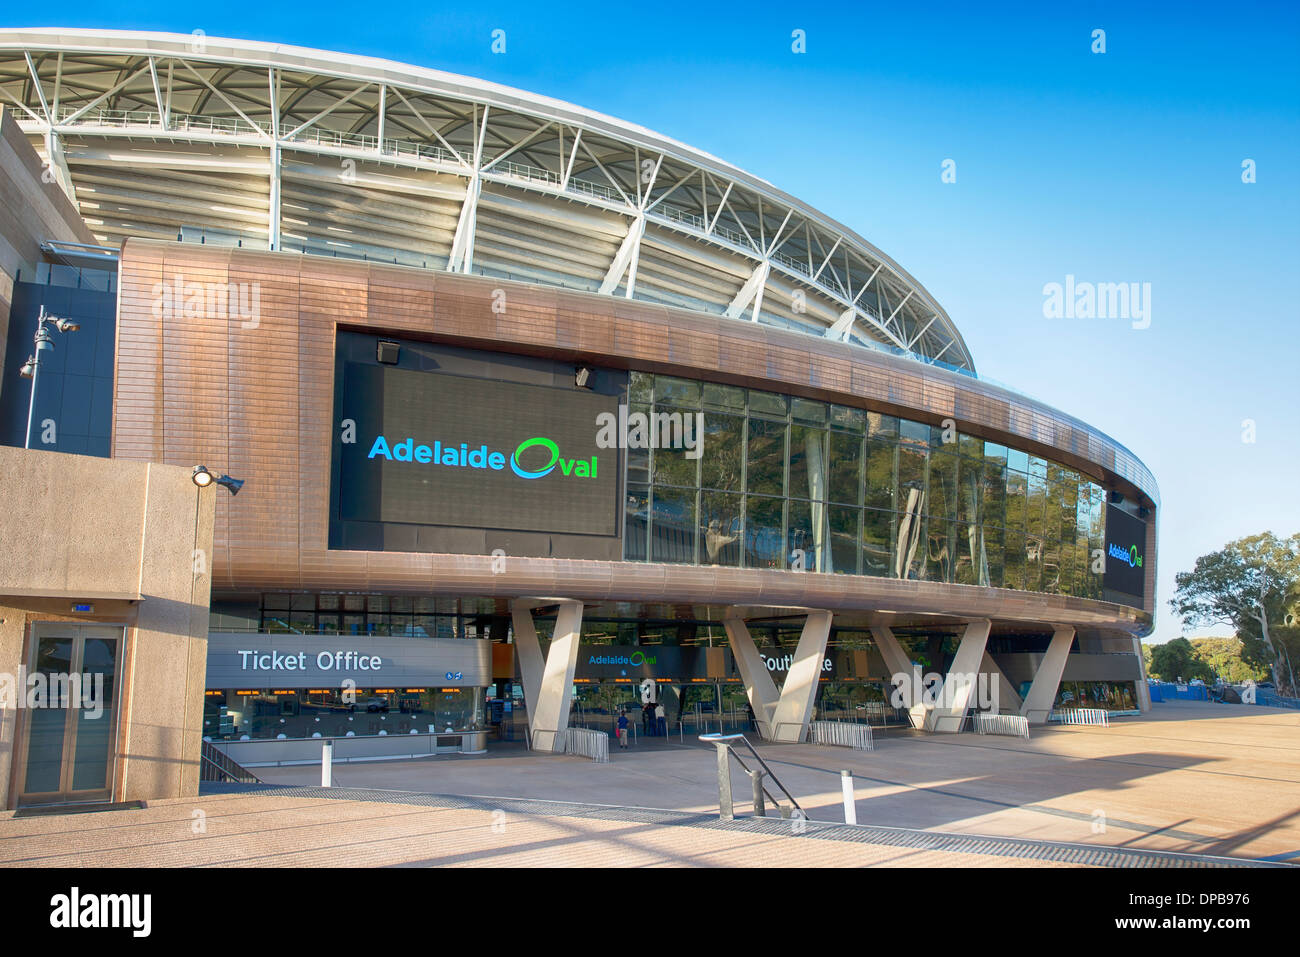 Il nuovo ristrutturato Adelaide Oval south gate. Foto Stock